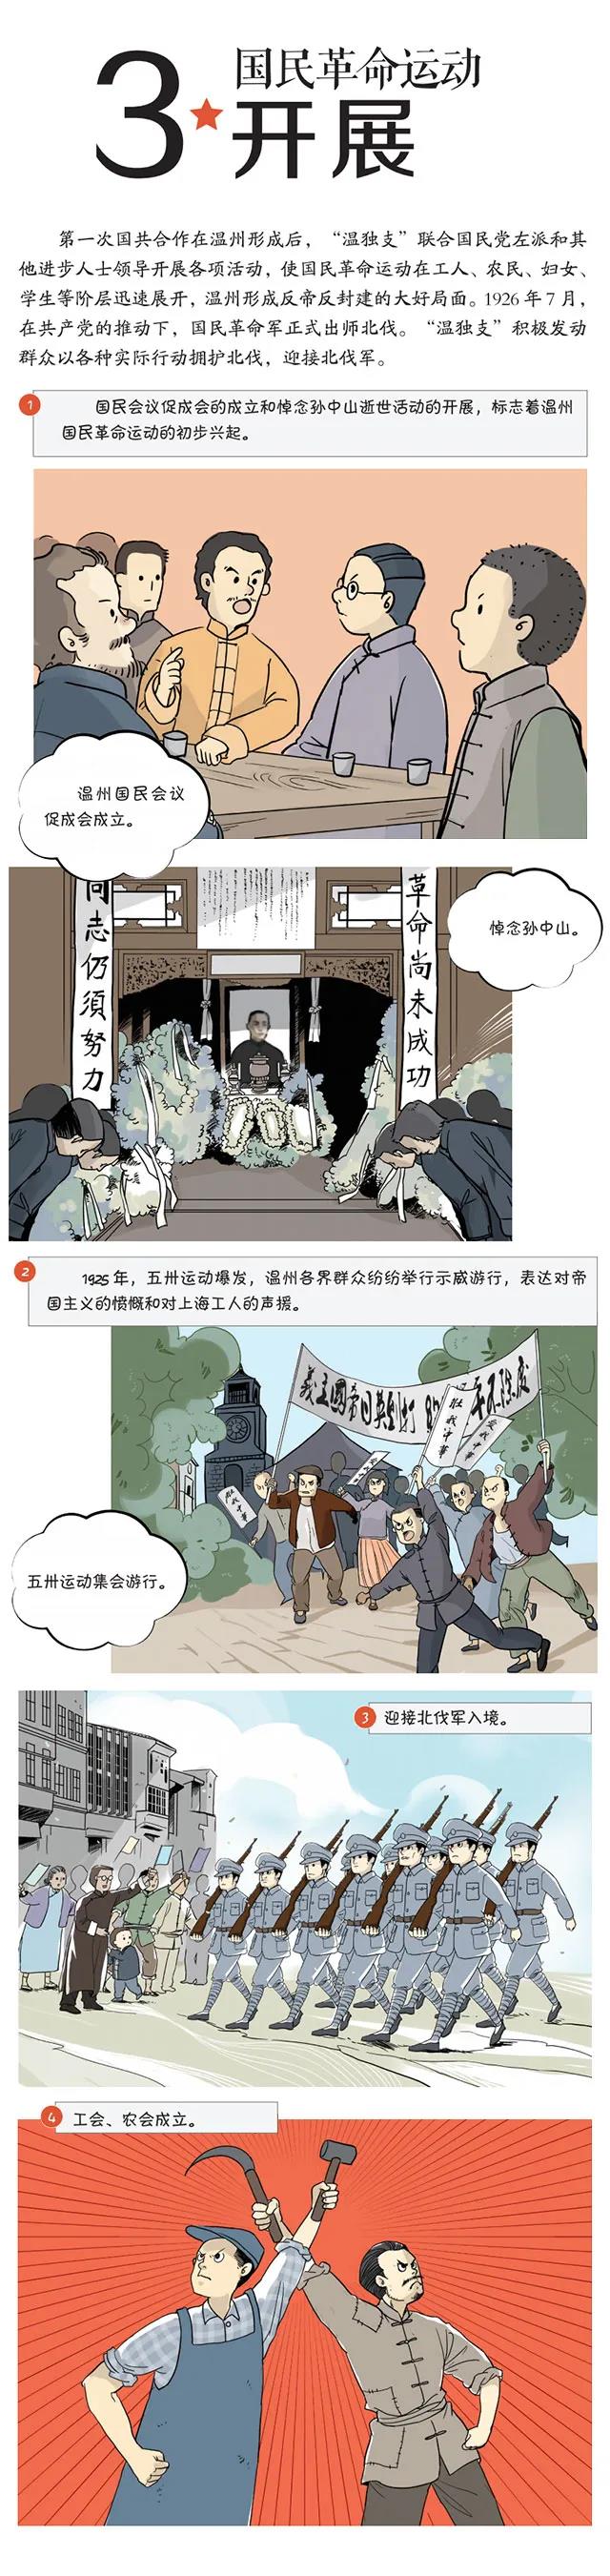 一组漫画带你看百年前温州青年的觉醒年代